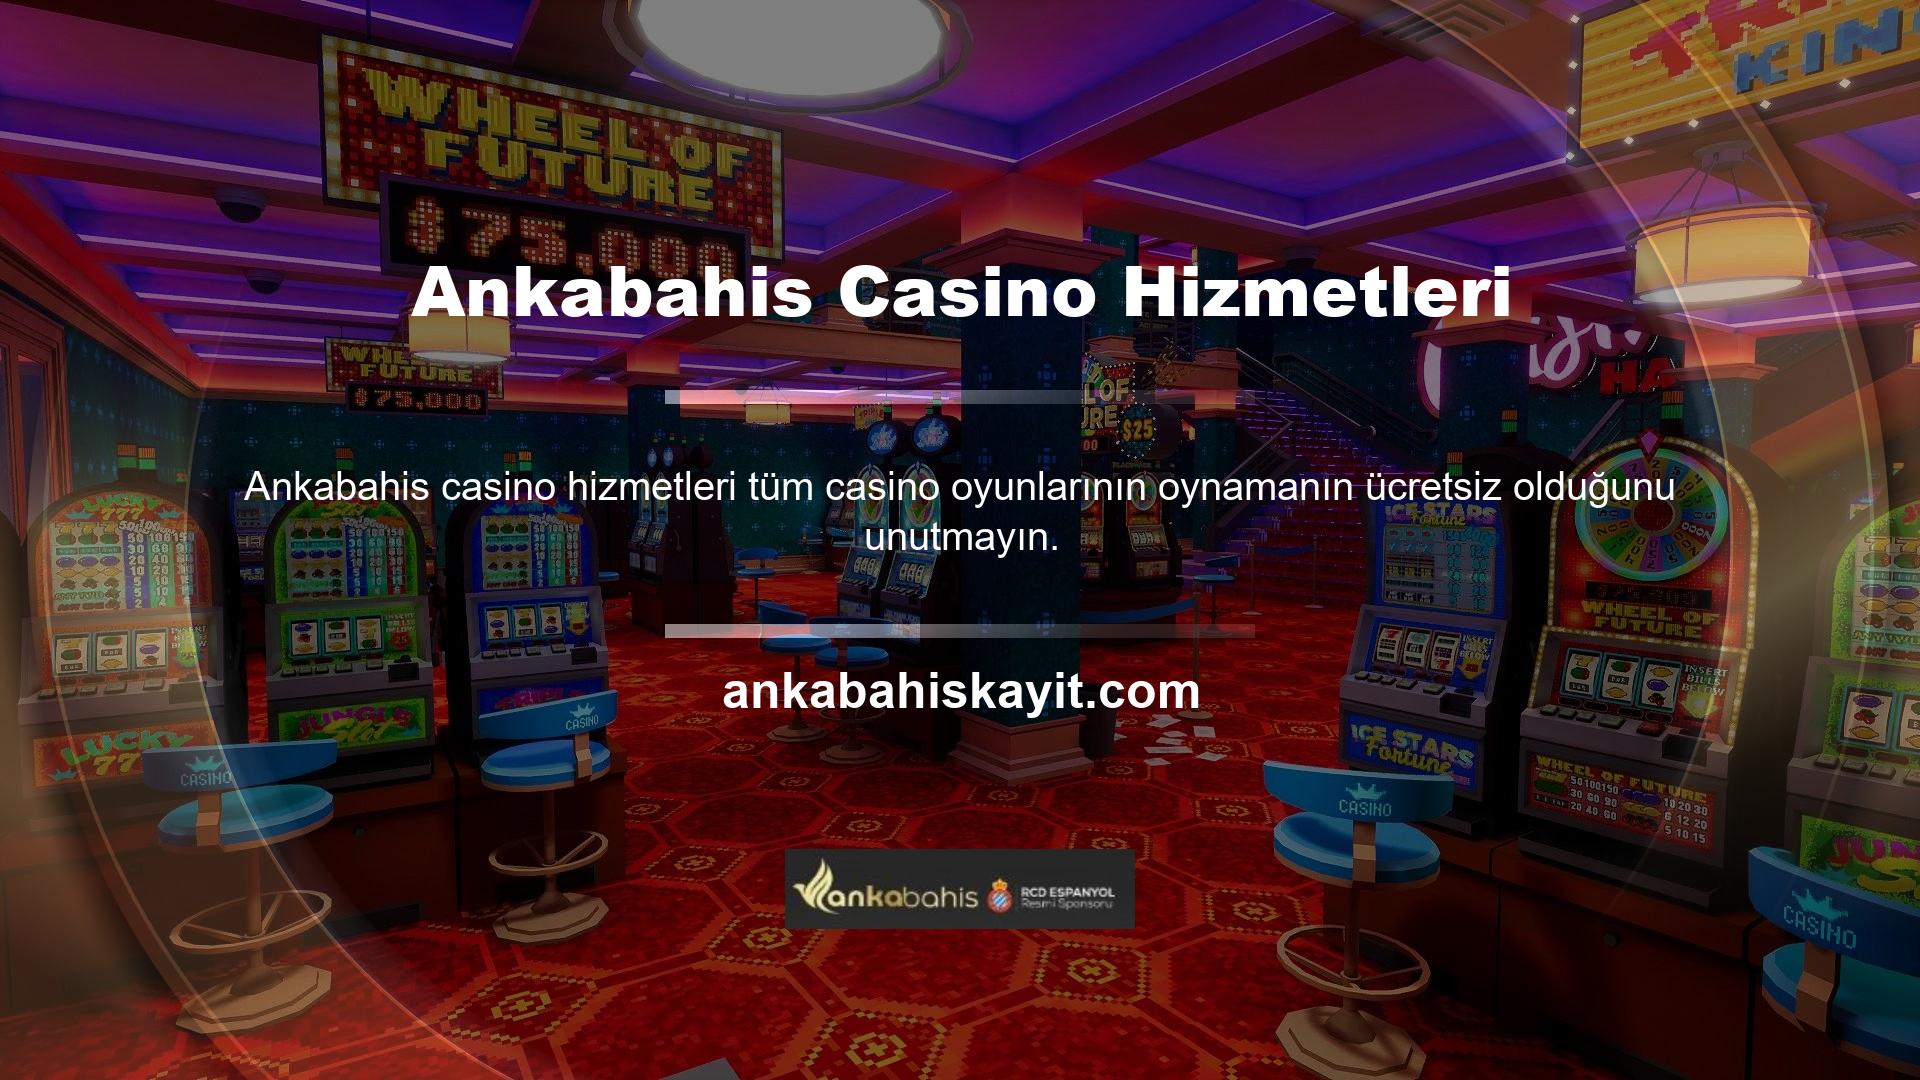 Ankabahis Casino Hizmetleri canlı bahis sitesi, ülkemiz bahis pazarında sesi güçlü olan premium şirketlerden biridir